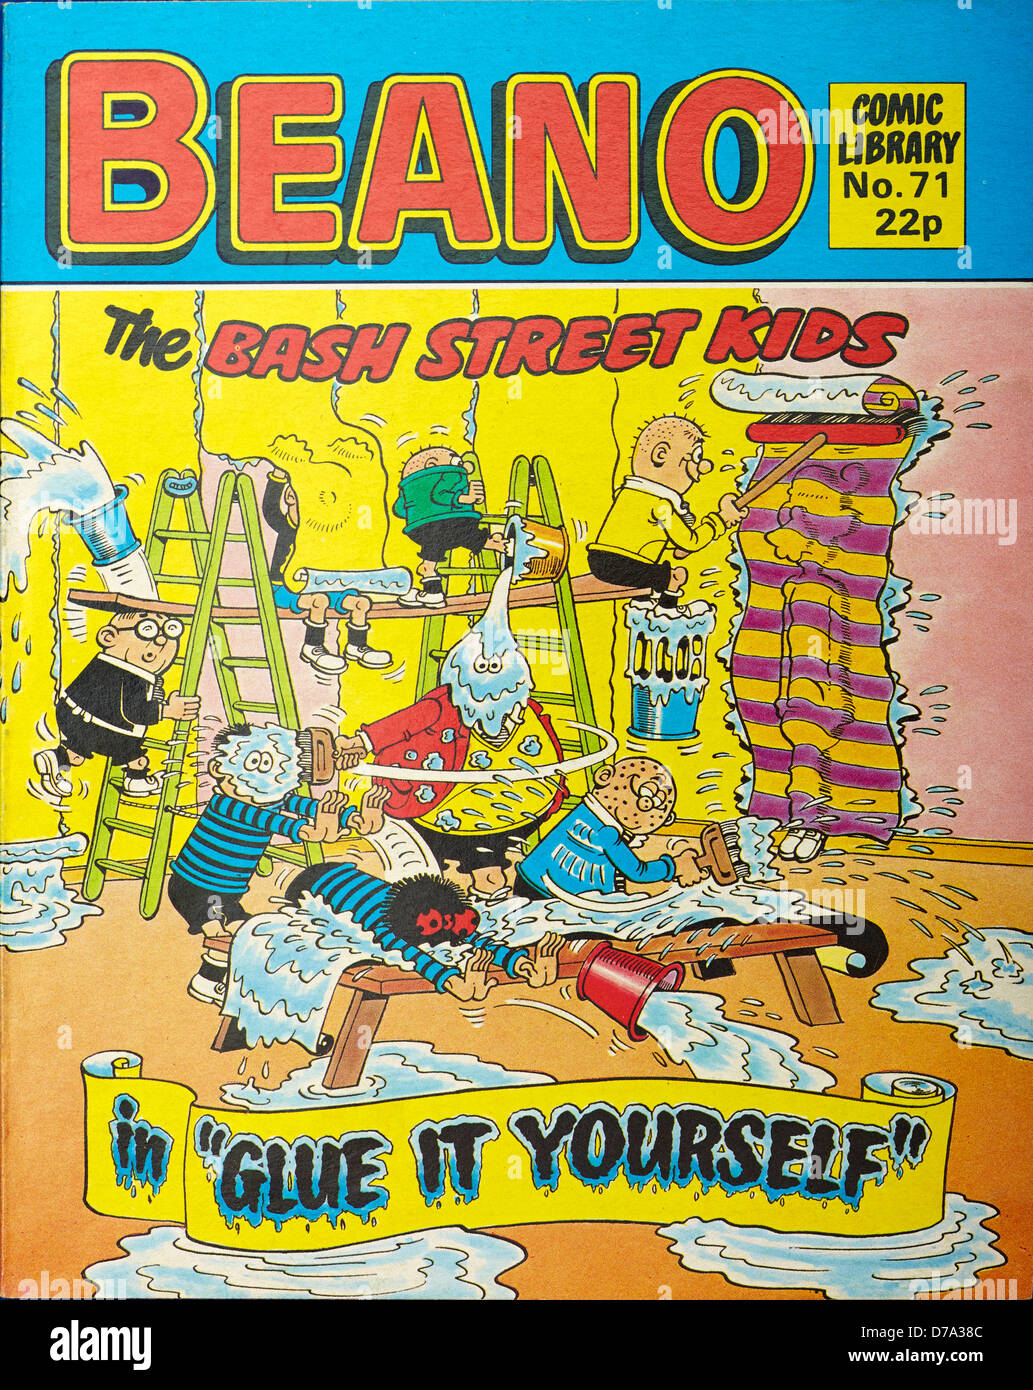 Il Beano rivista fumetto comico (Biblioteca) Foto Stock